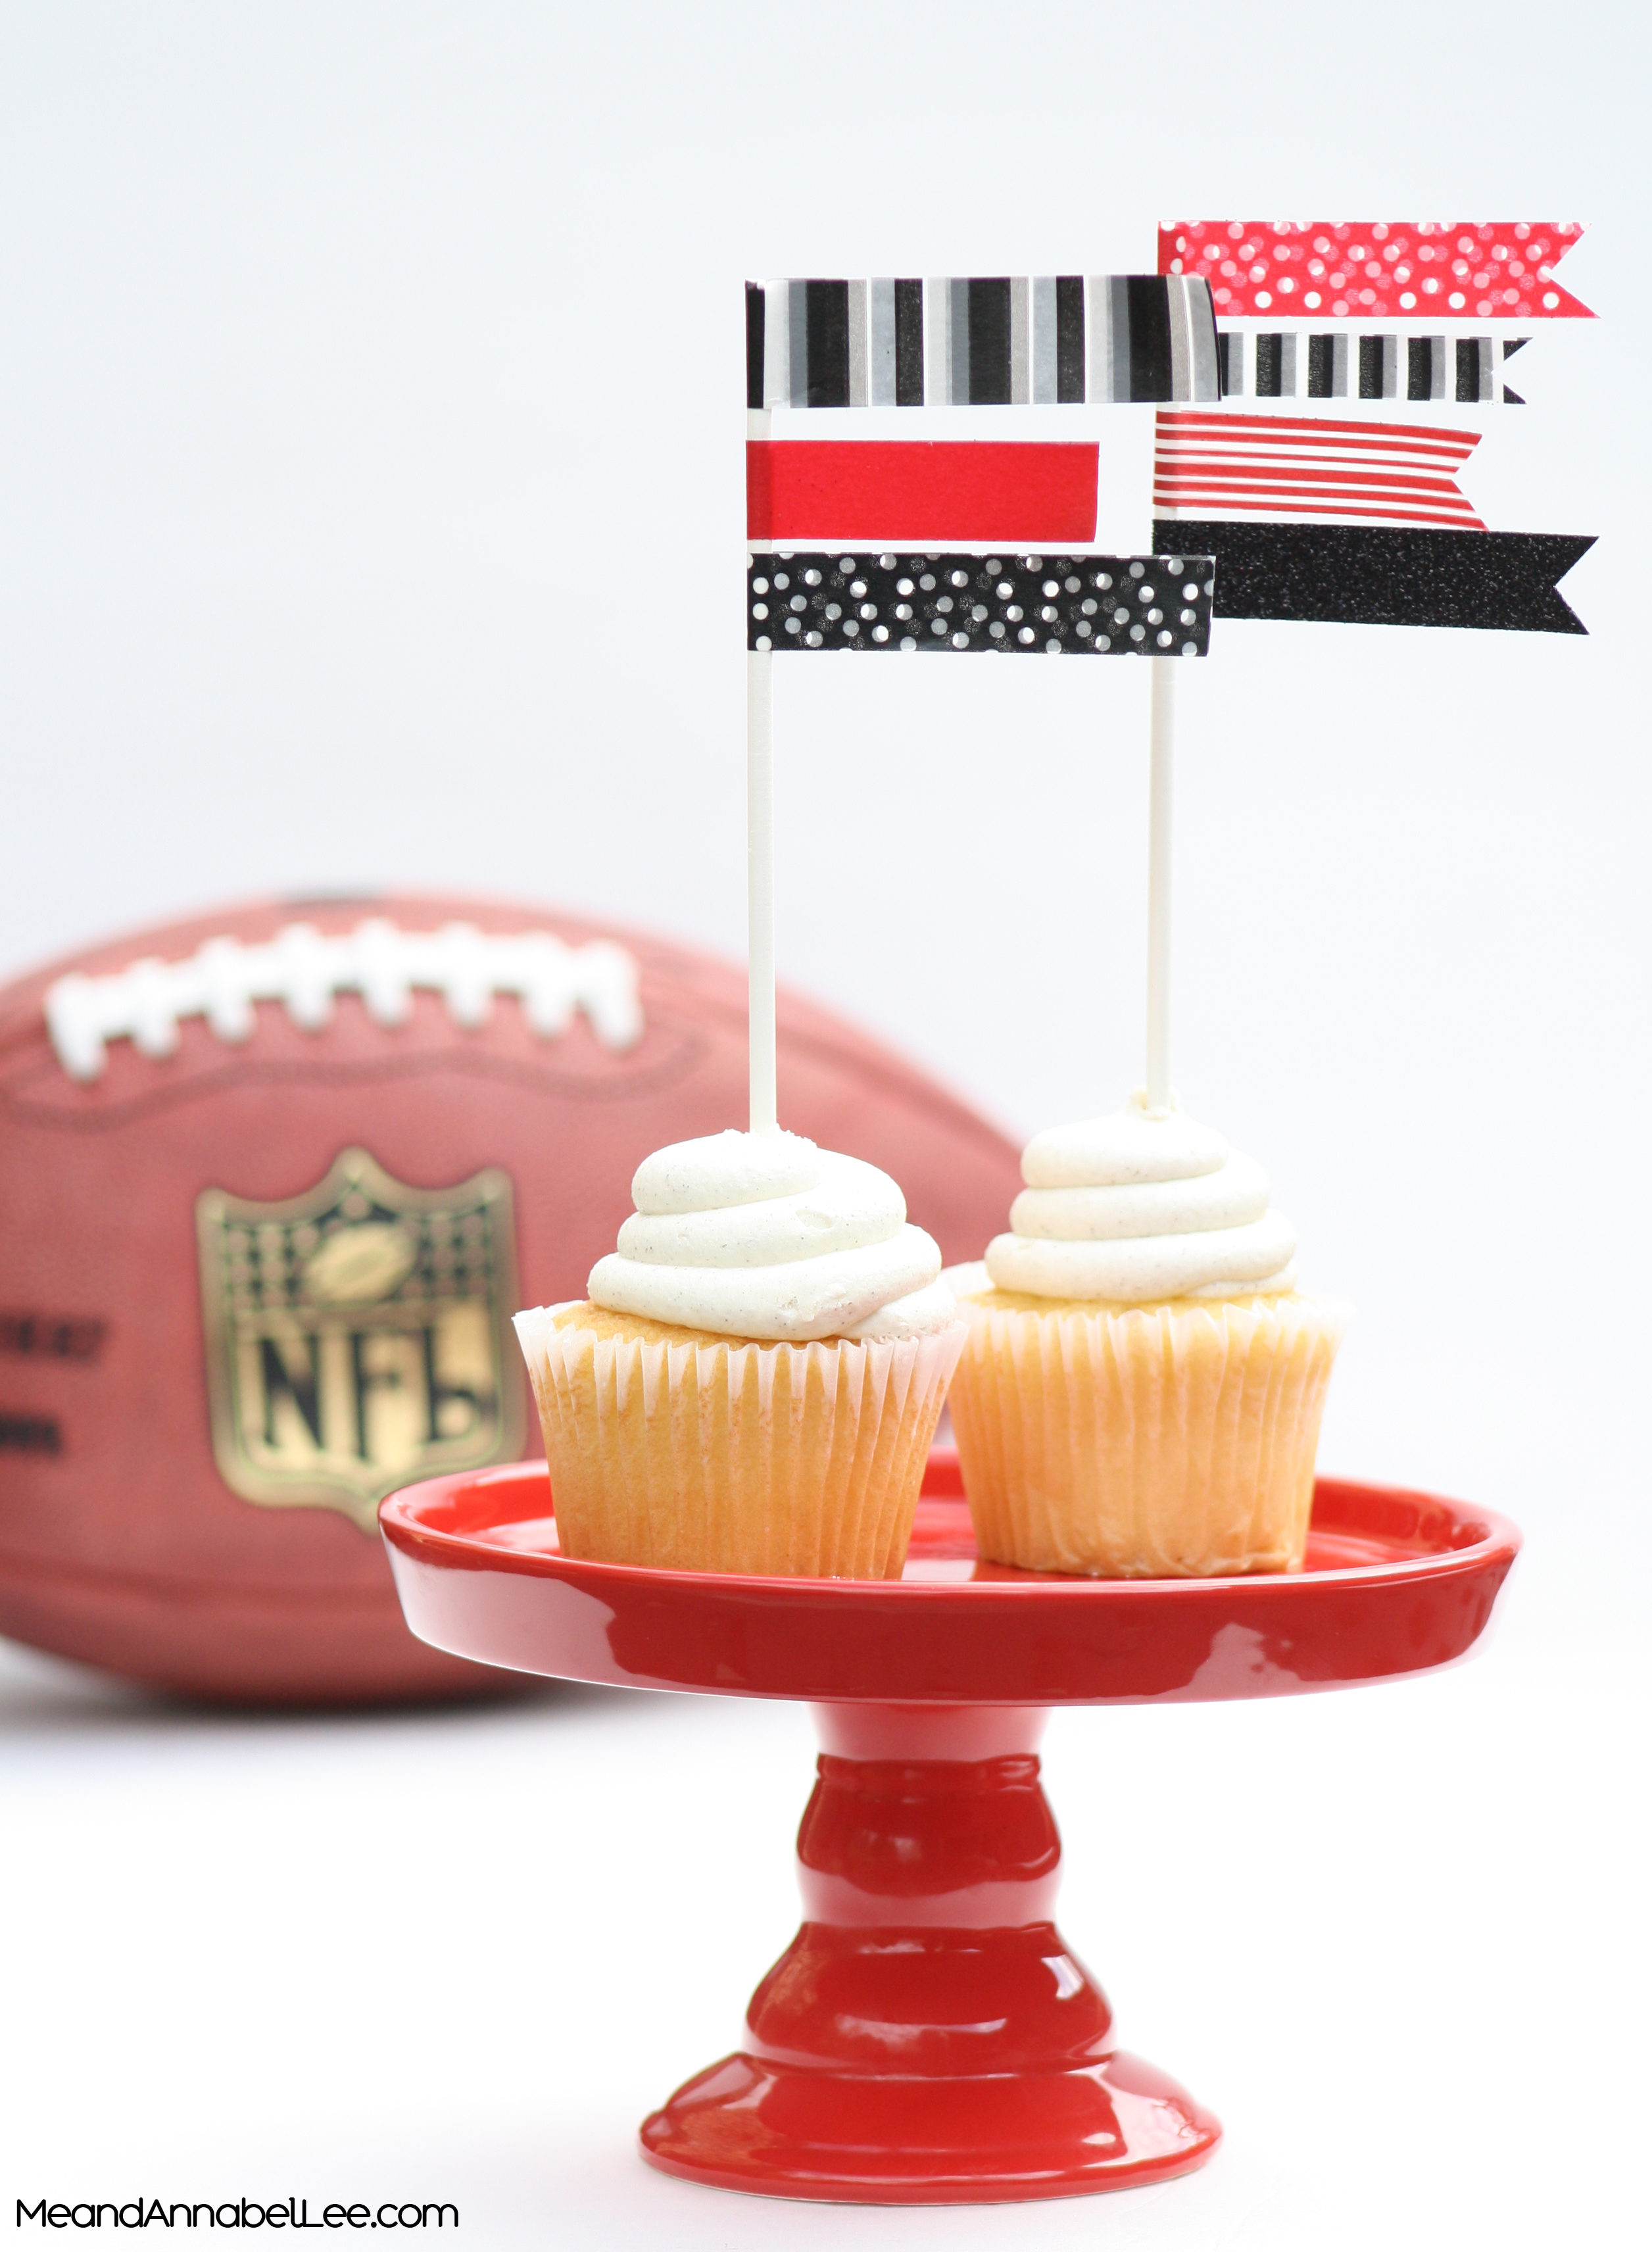 DIY Team Color Washi Flag Cupcake Topper - Atlanta Falcons vs New England Patriots - Super Bowl LI - www.MeandannabelLee.com - #superbowlparty #gameday #superbowlsunday